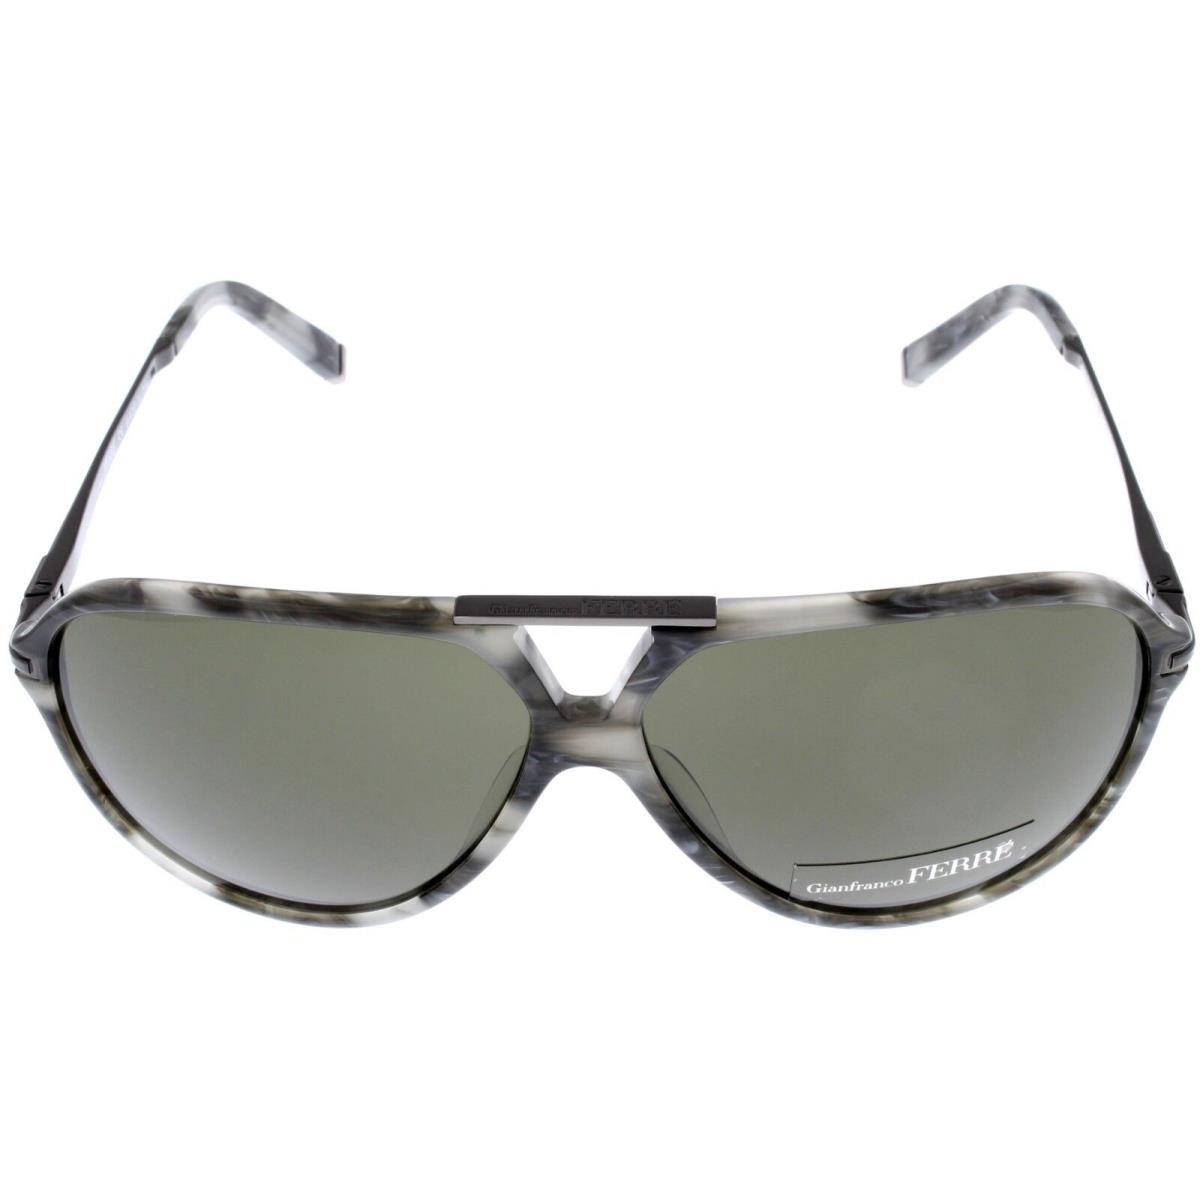 Gianfranco Ferre Sunglasses Unisex Aviator Grey Havana Multi-color GF922 03